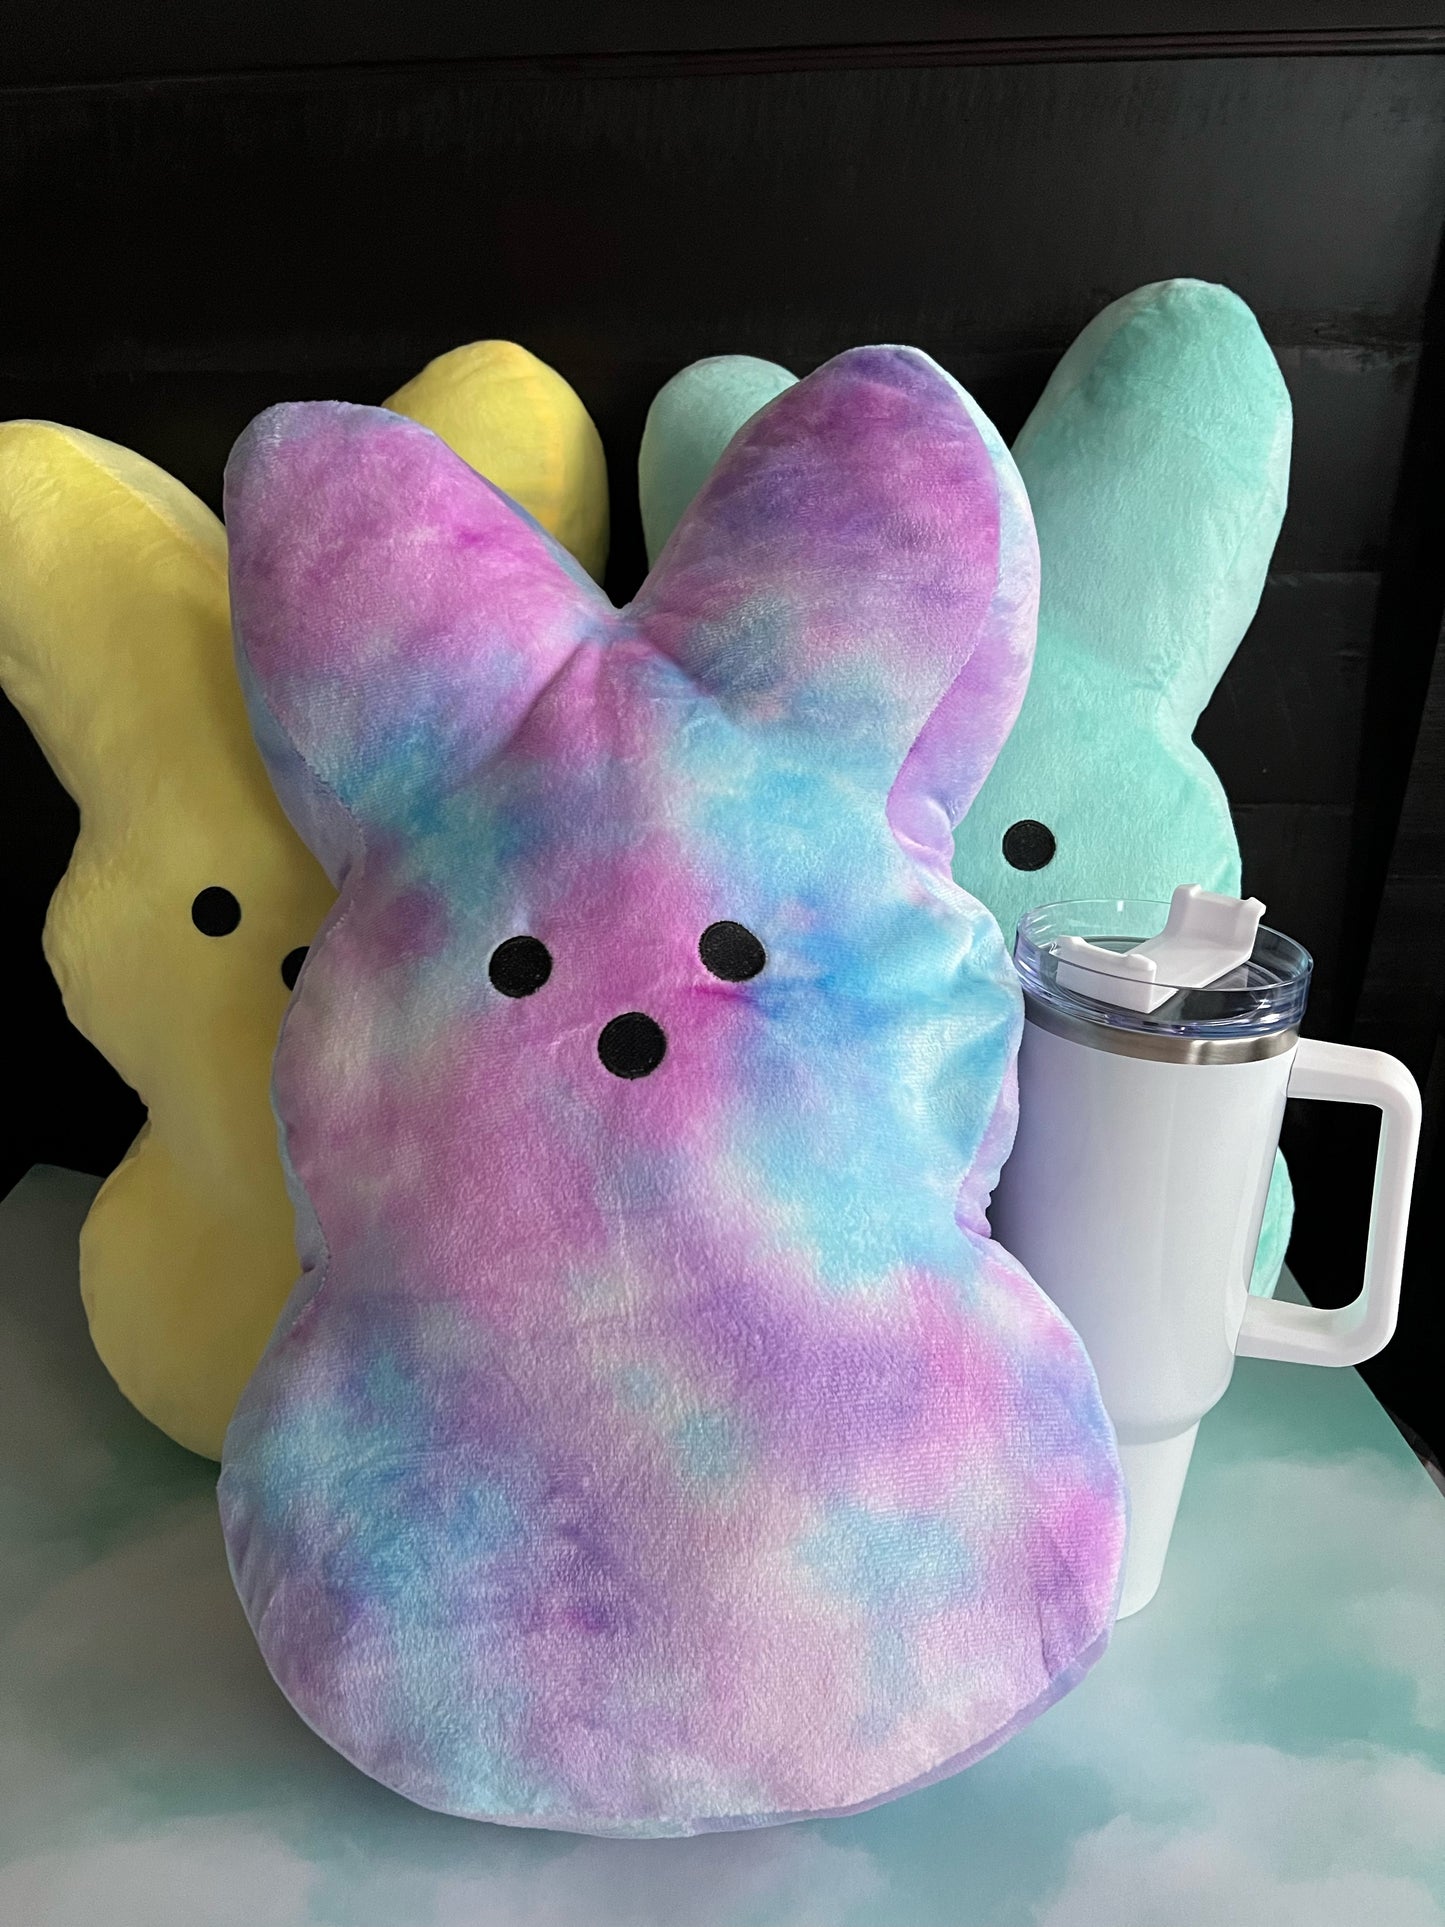 Large Bunny shaped Plush